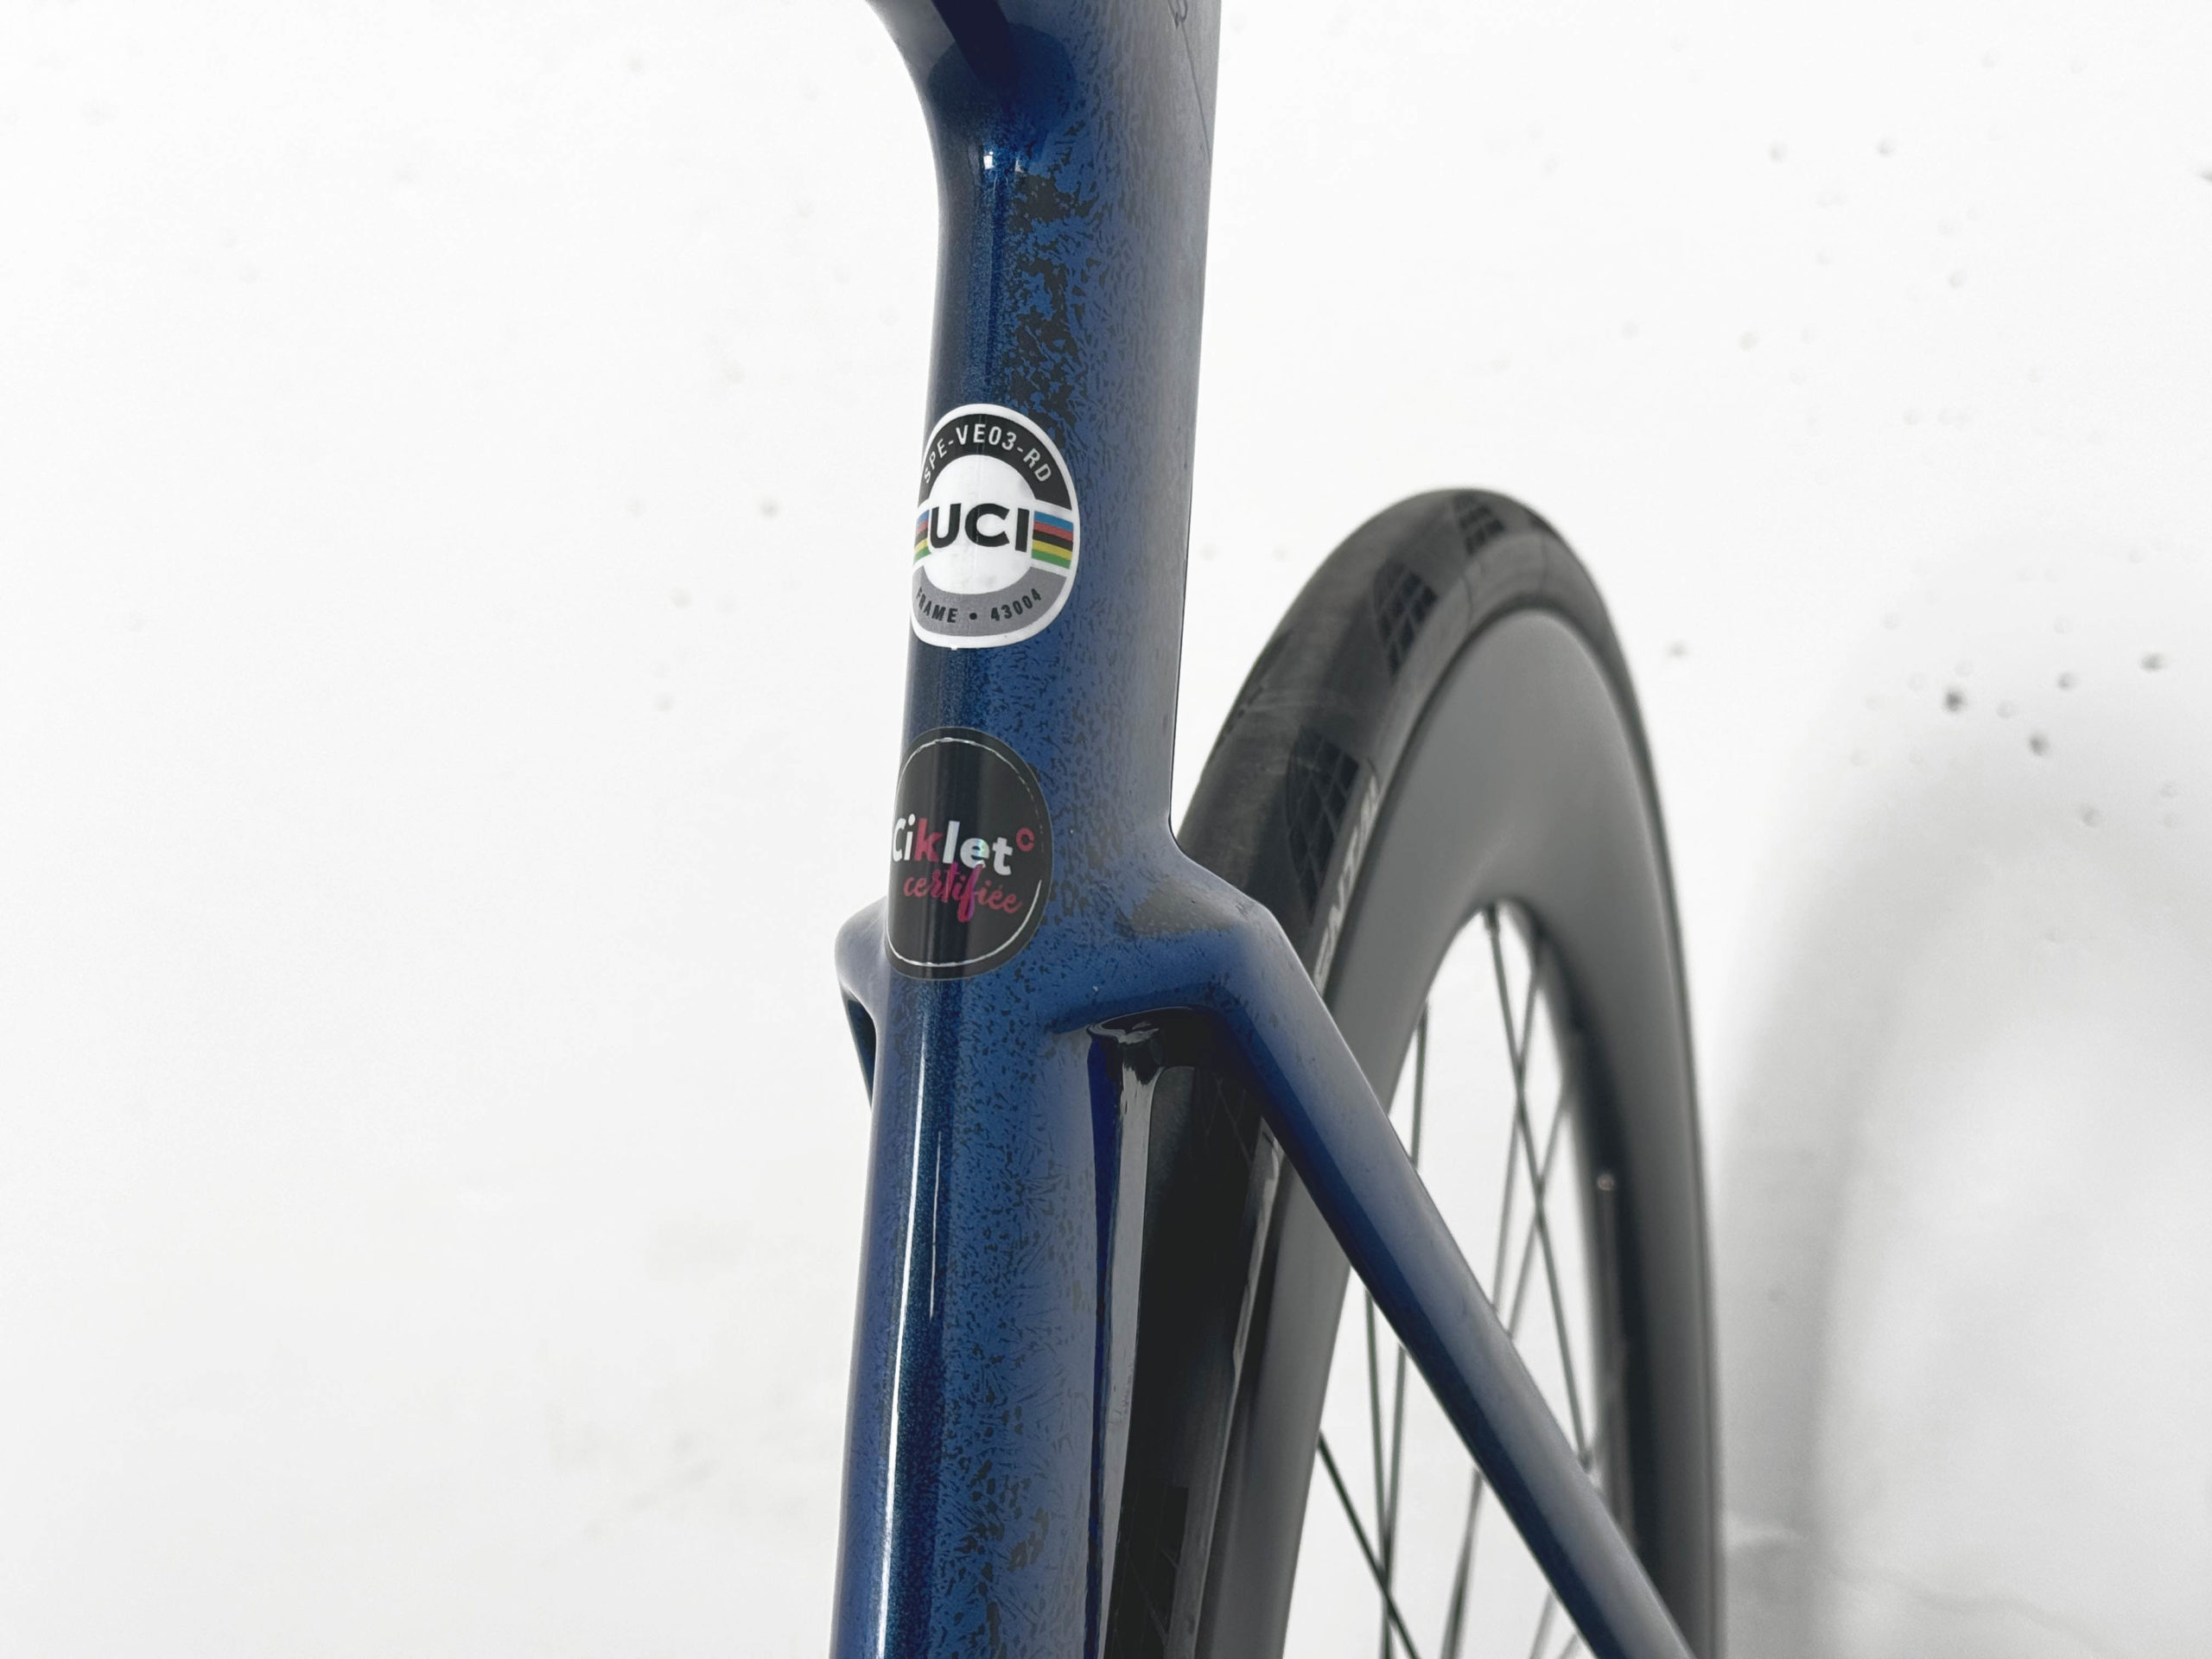 Vélo de route Specialized Venge S-Works Shimano Dura-Ace di2 / Roues Roval CL 64 rapide Black / Blue